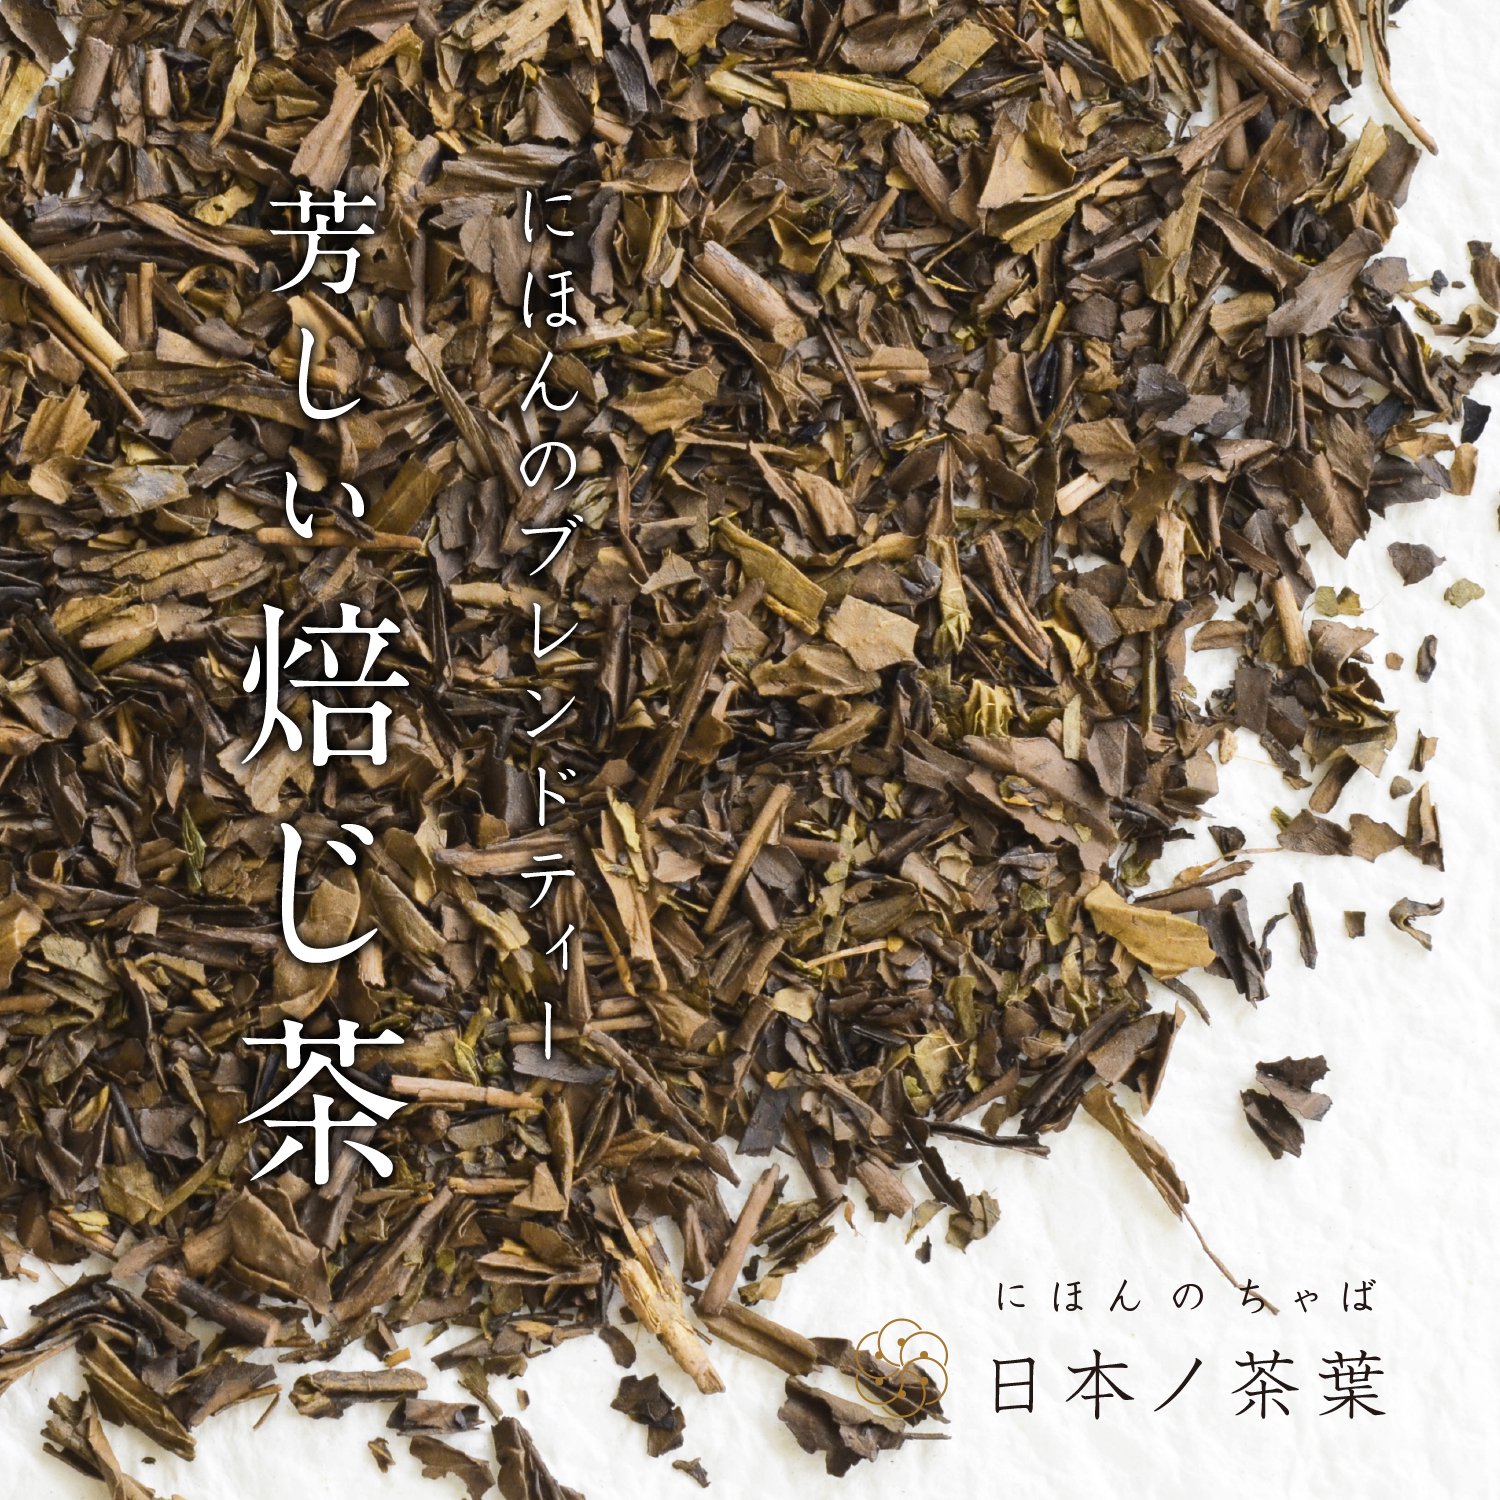 日本ノ茶葉にほんのブレンドティー「芳しい焙じ茶」浅煎り｜おいしい日本茶研究所